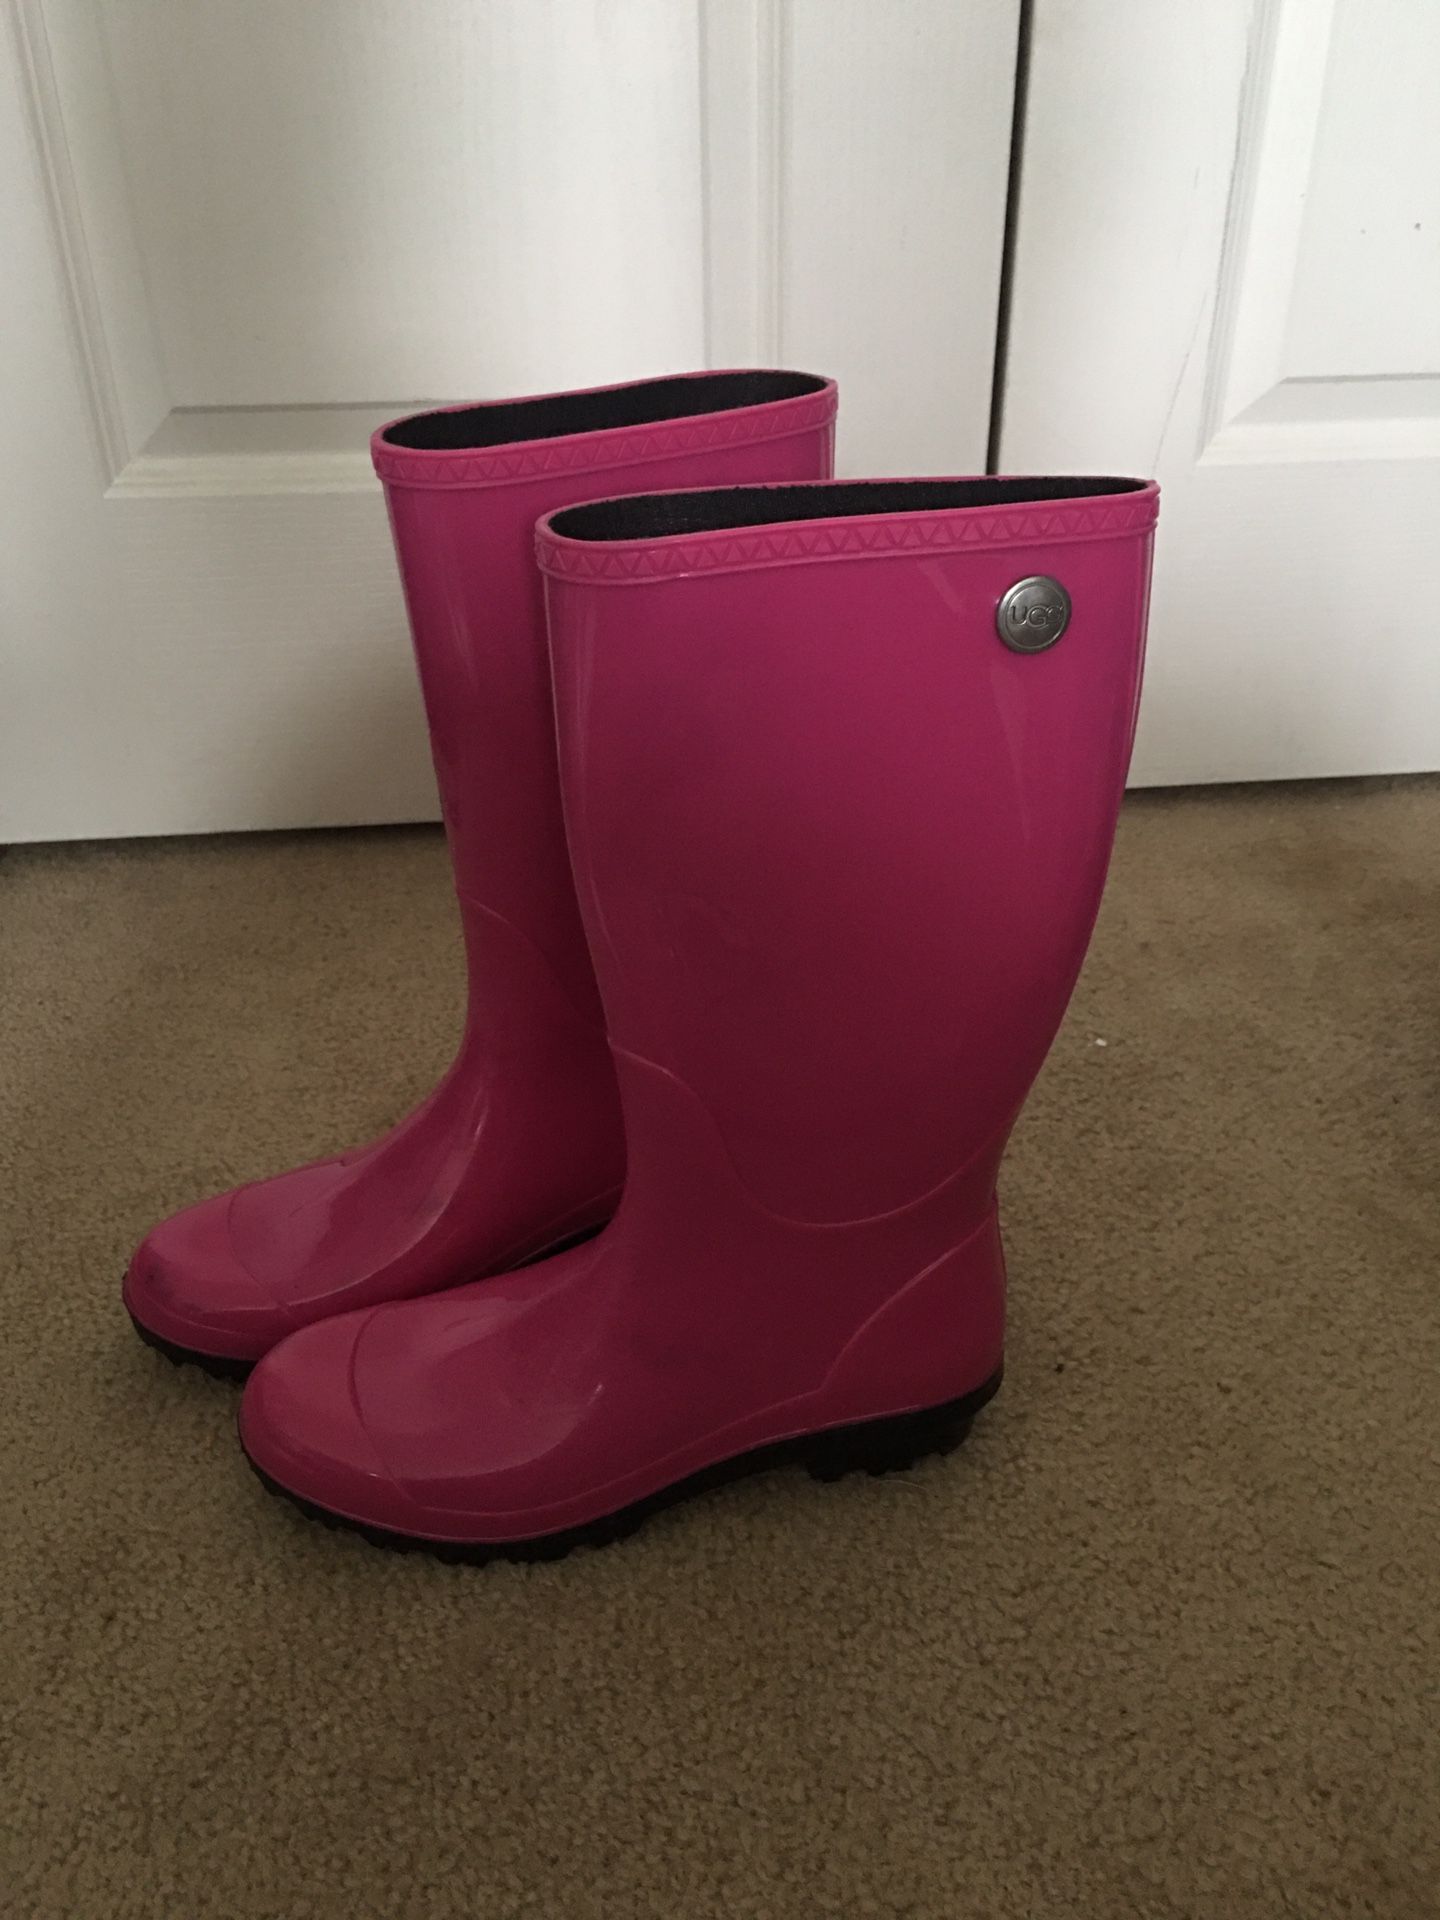 Ugg Size 10 rain boots